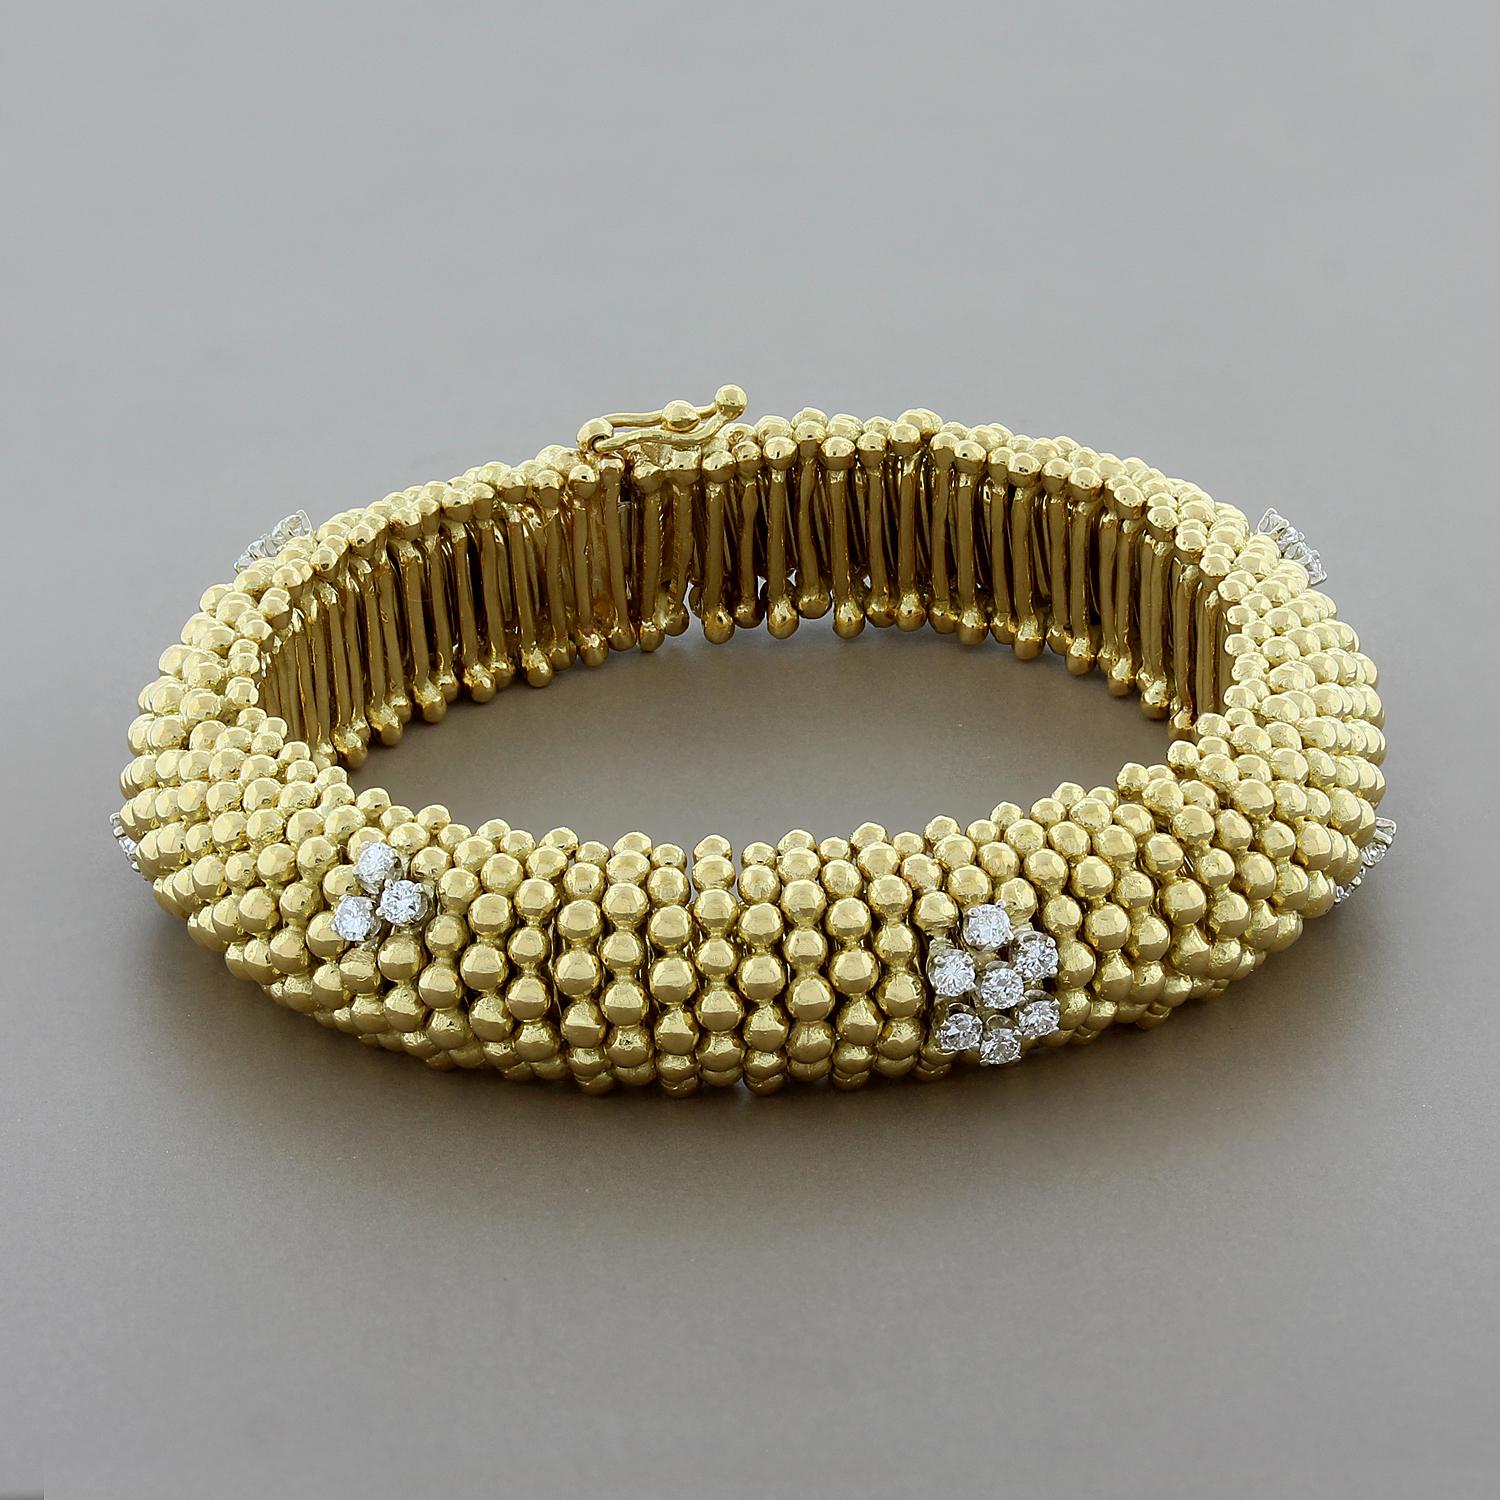 Dieses Armband ist mit 0,64 Karat Diamanten im Rundschliff besetzt. Die Diamanten bilden Cluster über dem goldenen Perlendesign mit einem Blumencluster in der Mitte. Dieses Armband ist meisterhaft verarbeitet, auch im Inneren - es dehnt sich ein